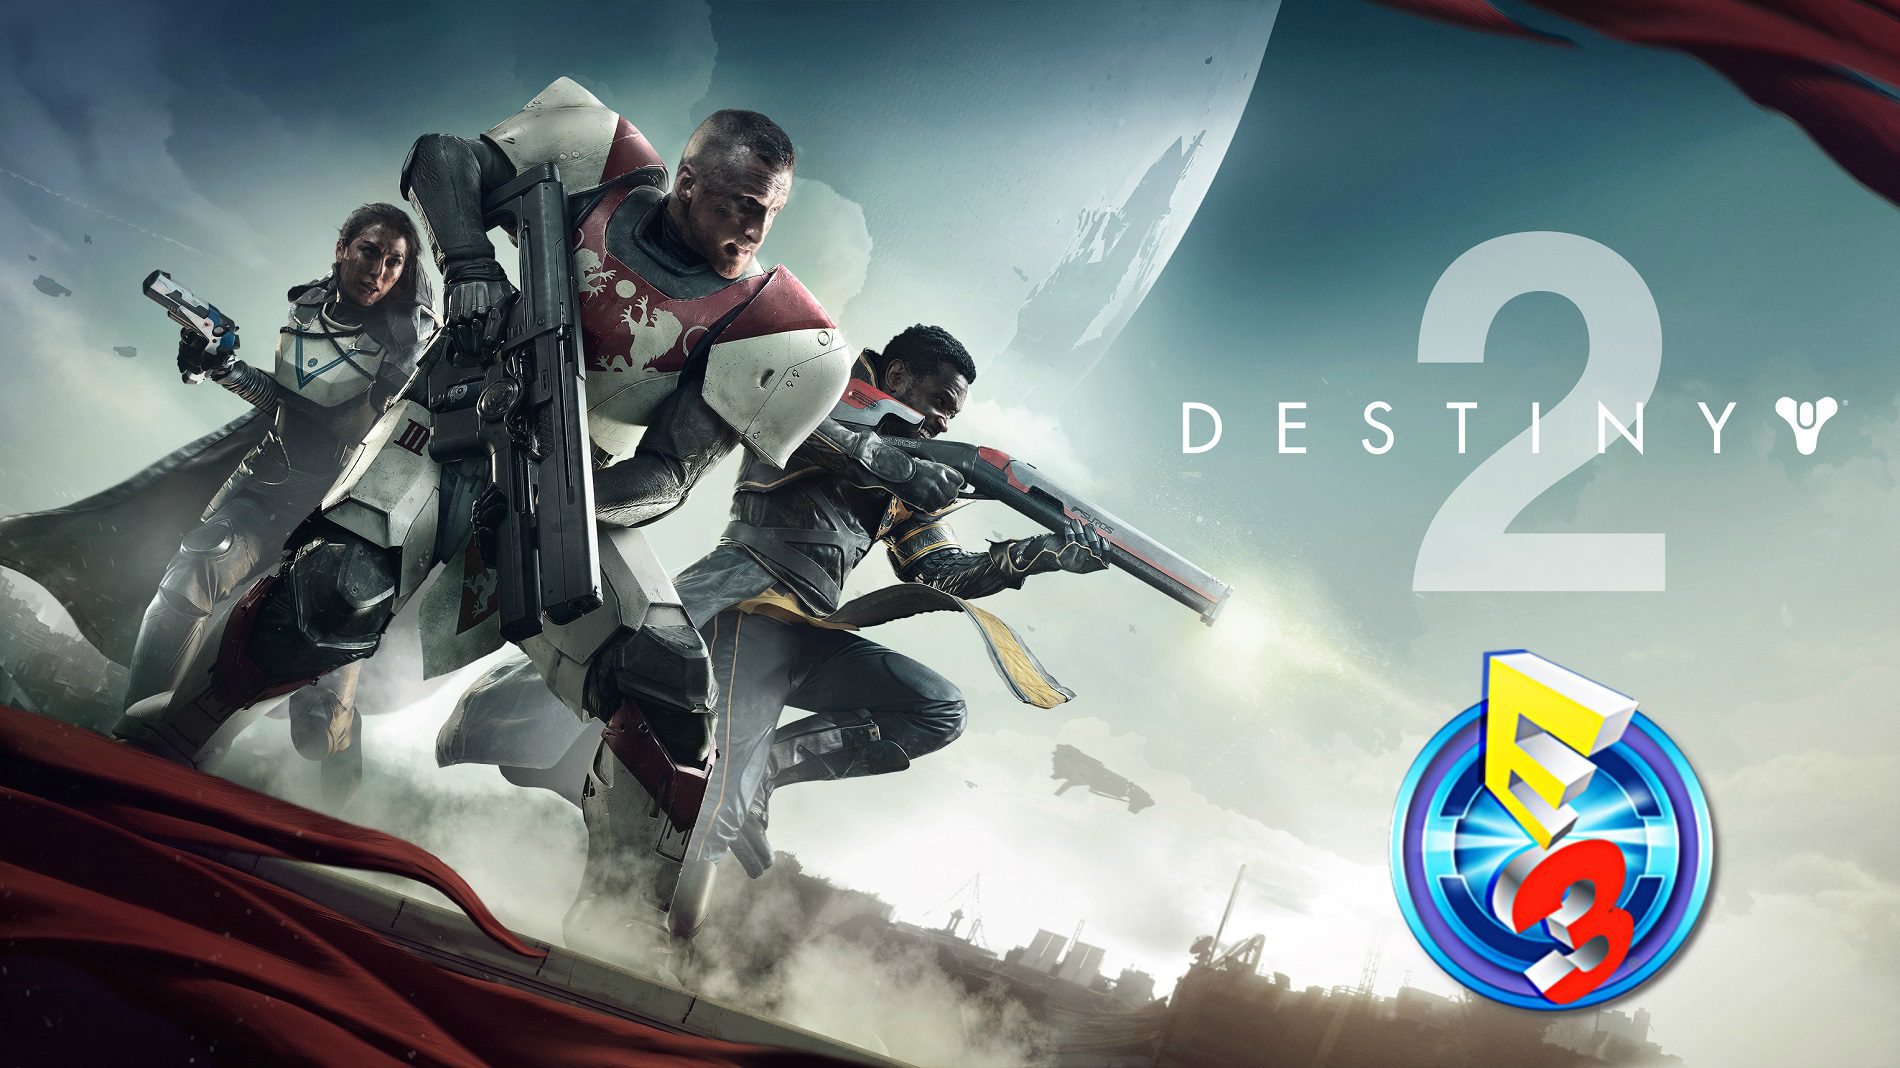 E3 2017: Destiny 2 Hands-On Impressions